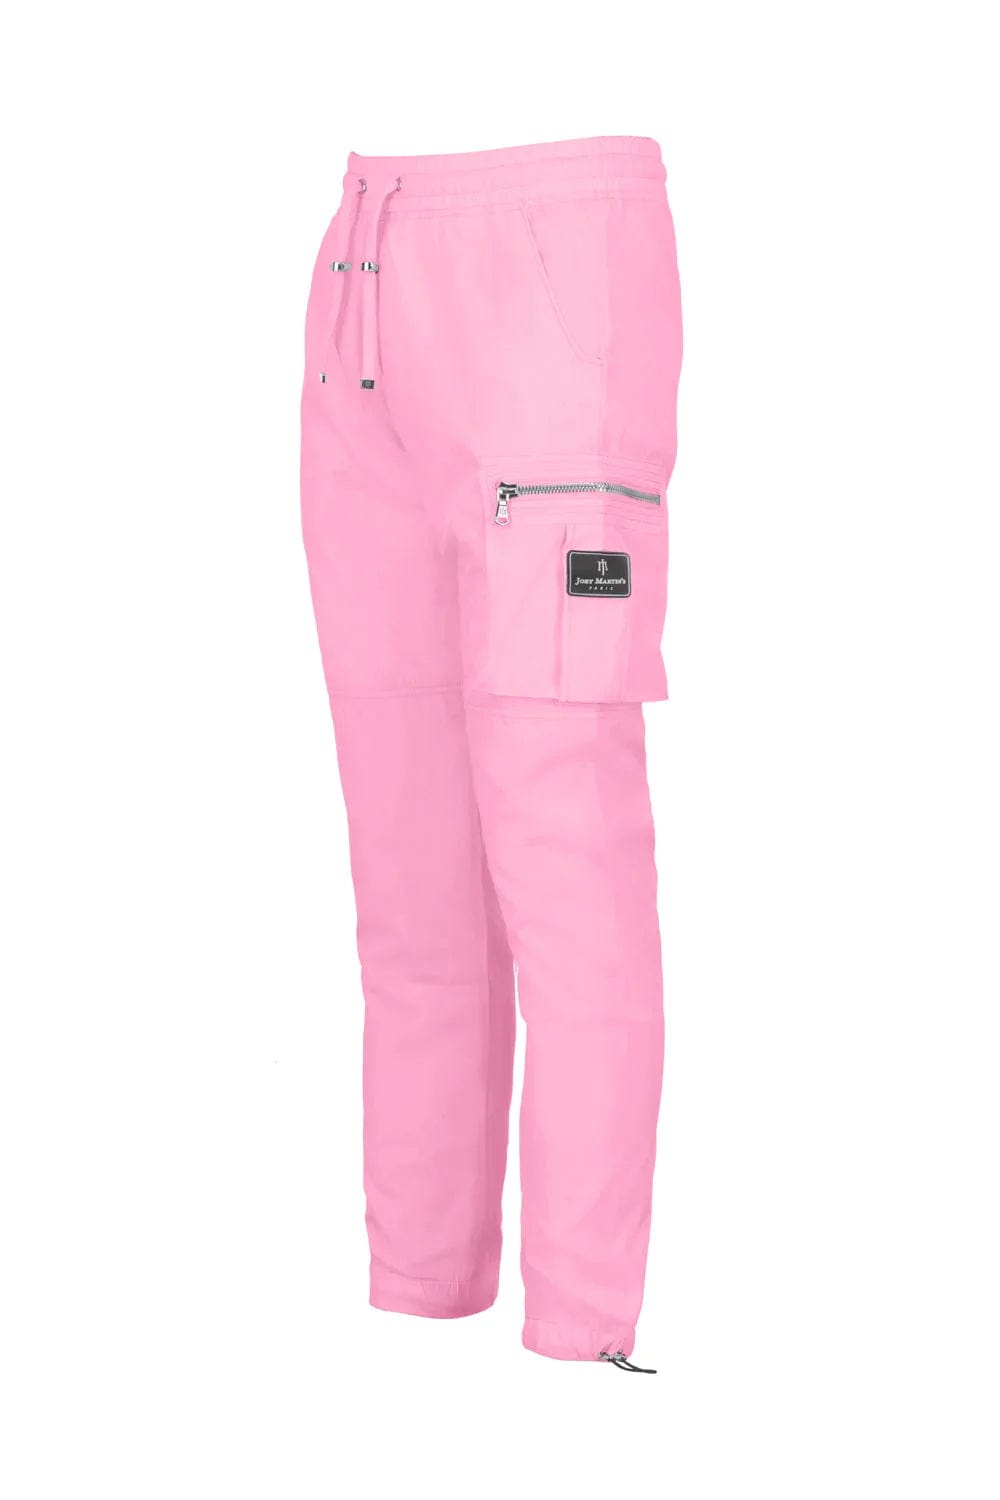 MERSHIER Pink Cargo Pants